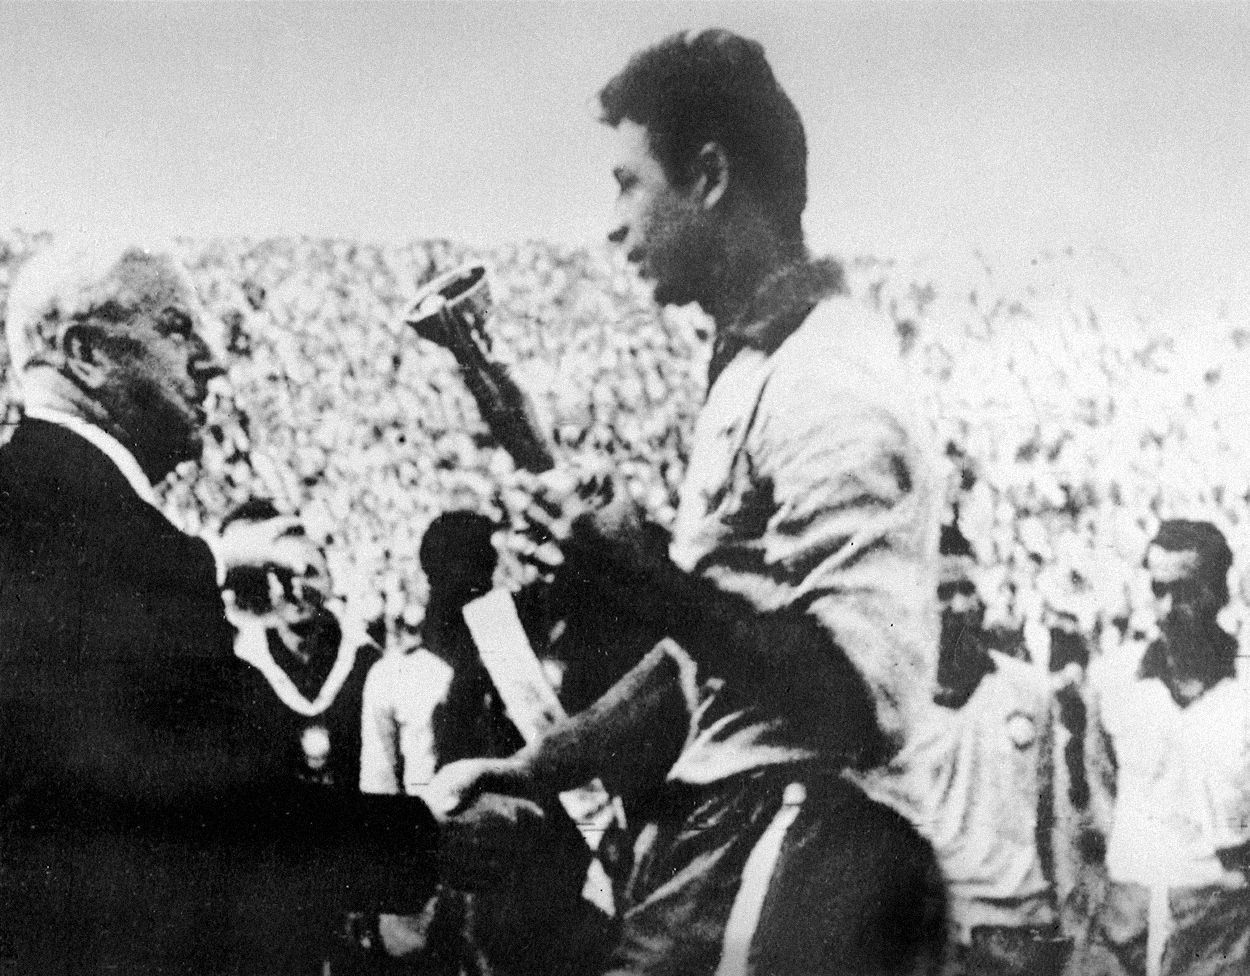 Fotogalerie / Vícemistři / Československo / MS ve fotbale / Rok 1962